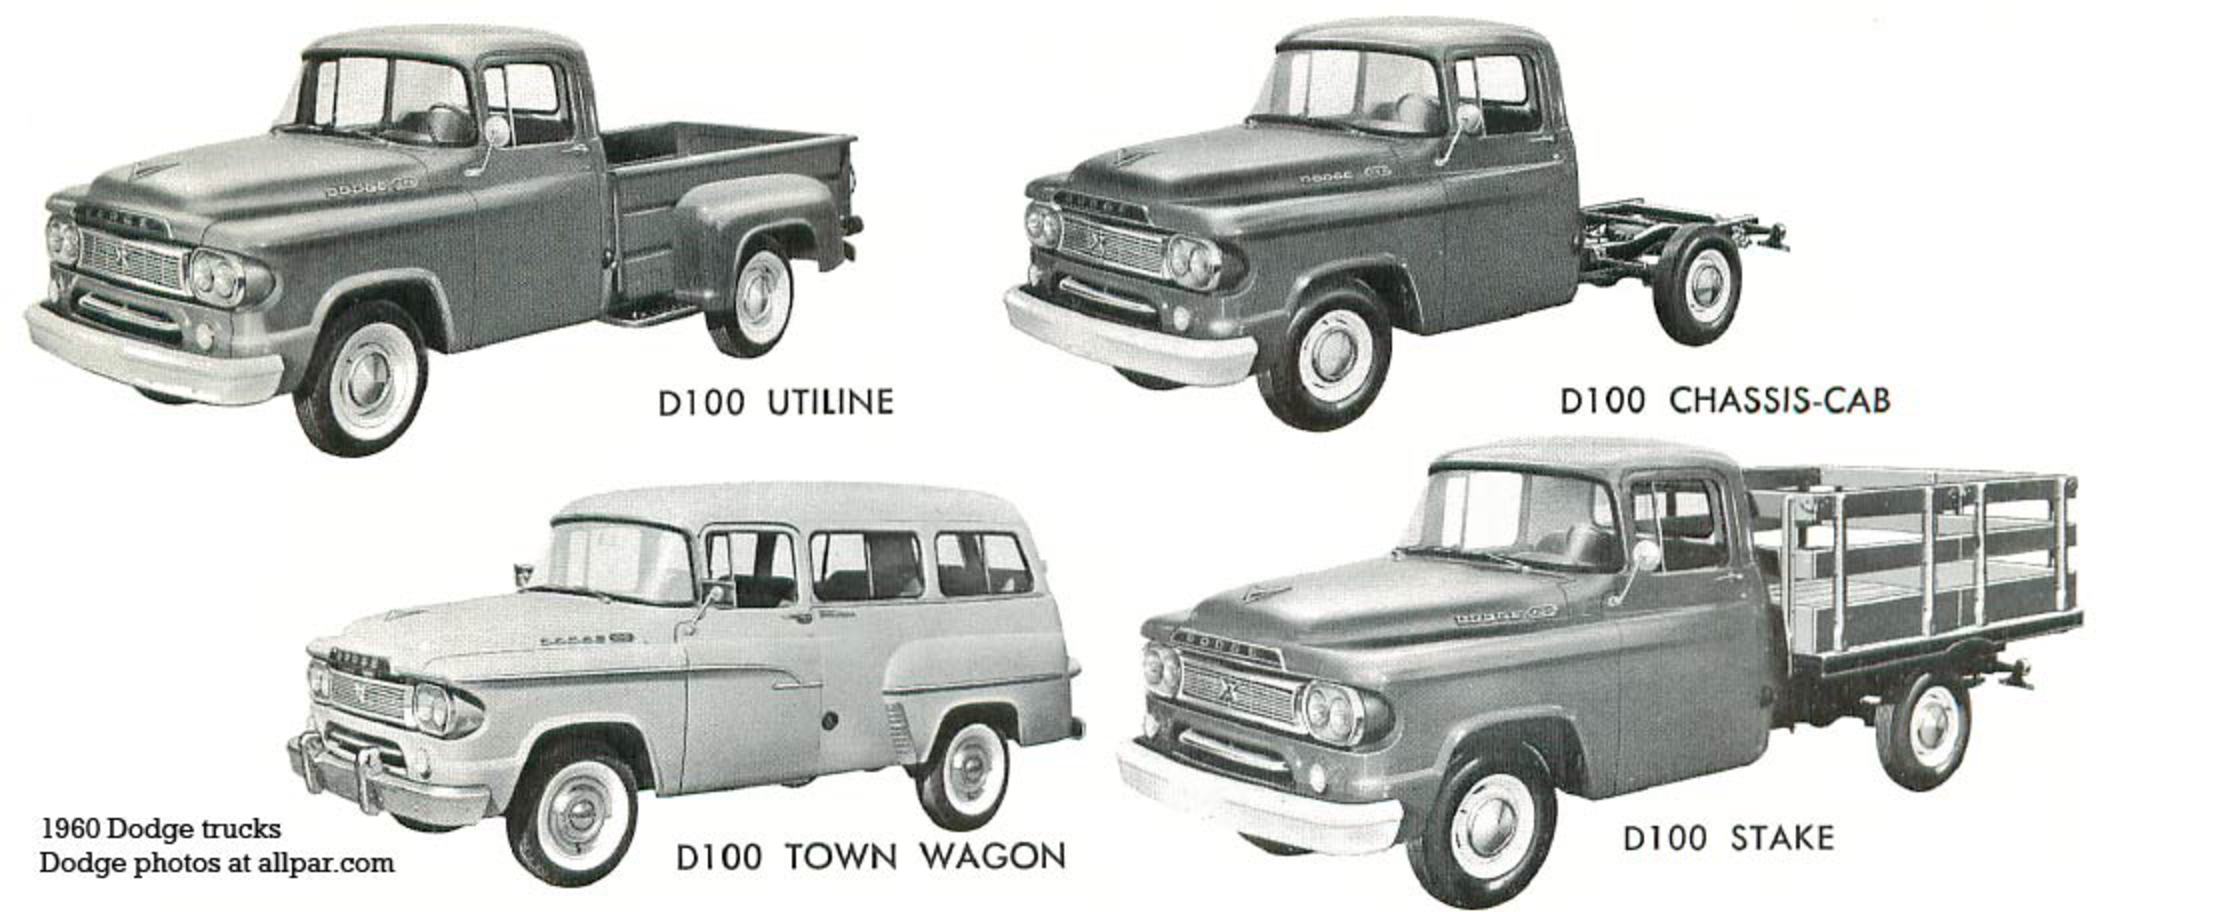 Dodge D-100 Tradesman